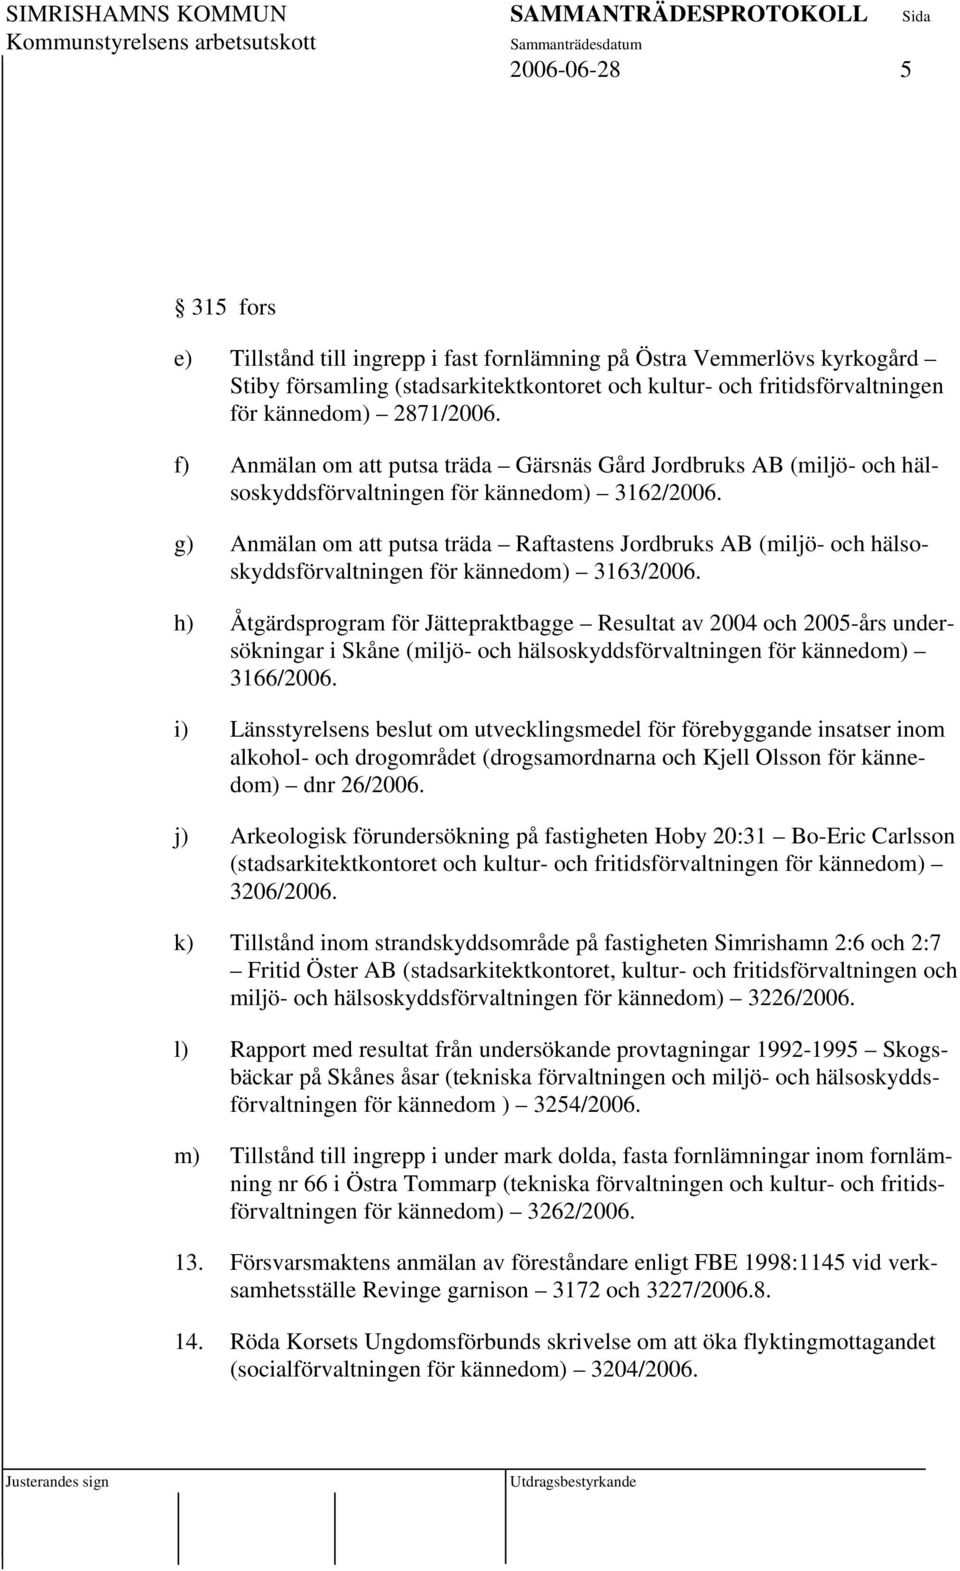 g) Anmälan om att putsa träda Raftastens Jordbruks AB (miljö- och hälsoskyddsförvaltningen för kännedom) 3163/2006.